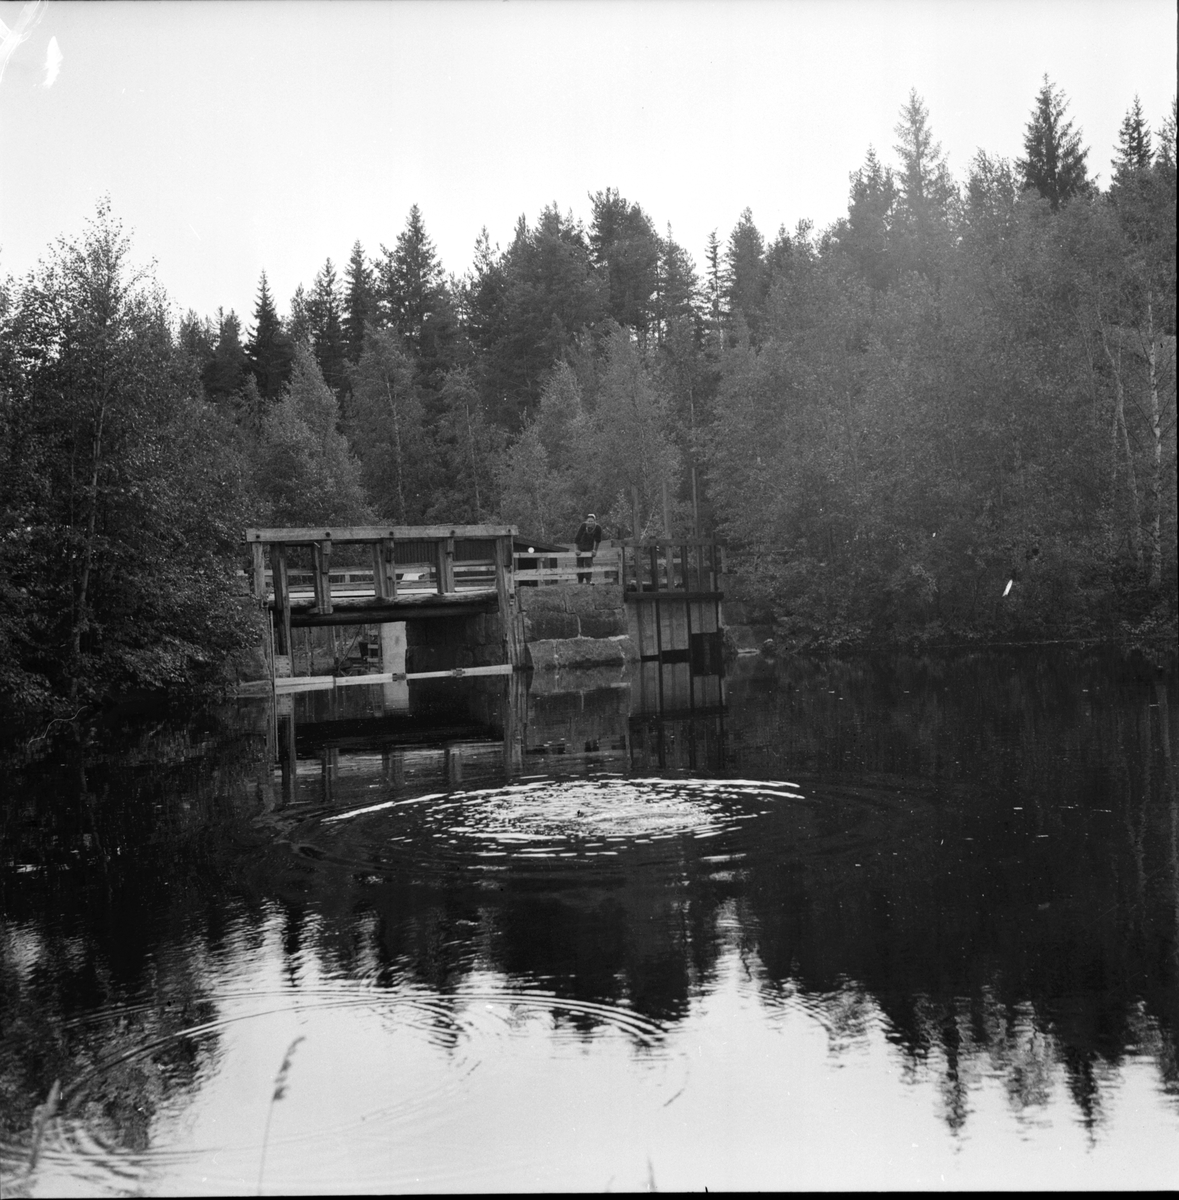 Olovsfors,
Sörbo,
Ny kraftstation vid sommarstugan,
Åke Andersson,
12 Sept 1964